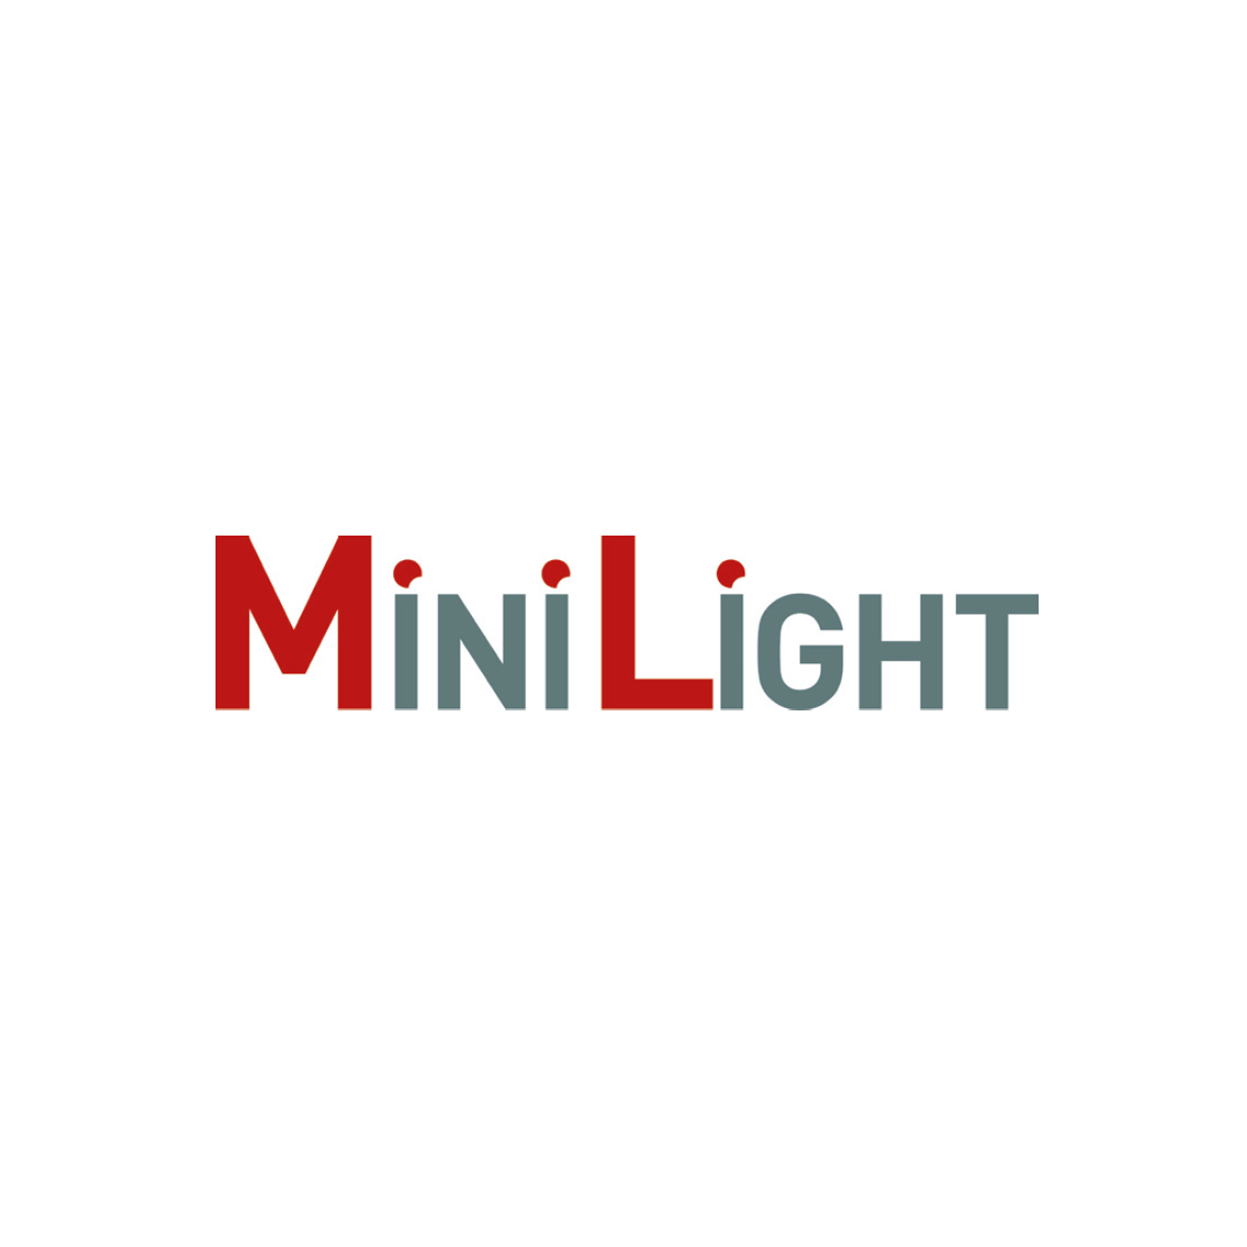 MiniLight - Objekte Licht & Raum GmbH in Hamburg